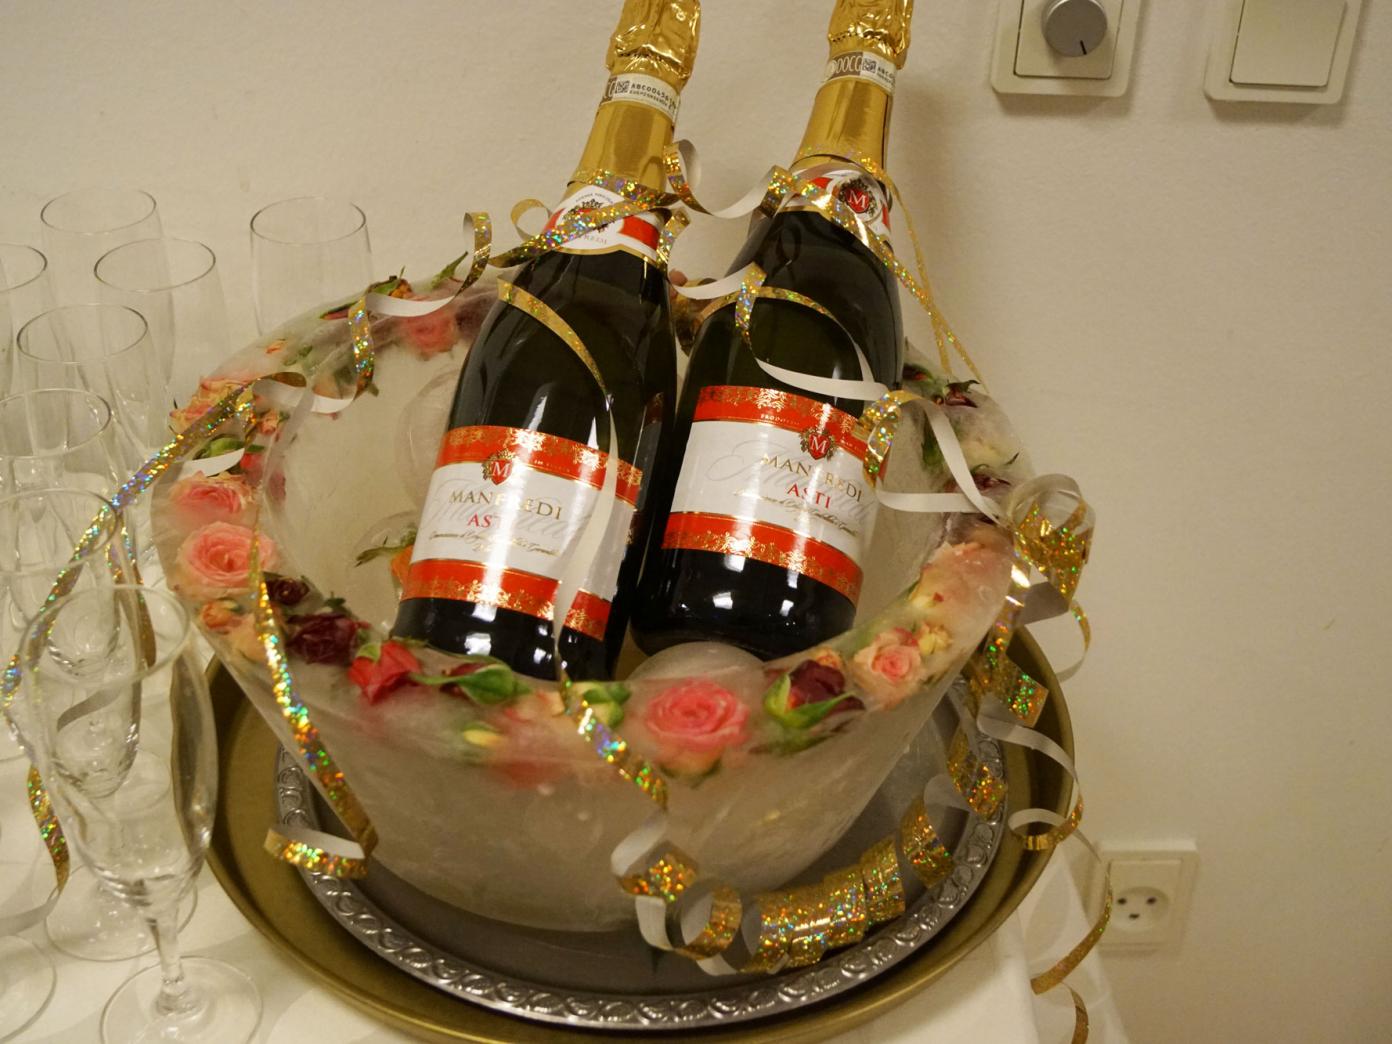 To flasker Asti på køl i en bowle. Flaskerne er pyntet med serpentiner og ved siden af står champagneglas.